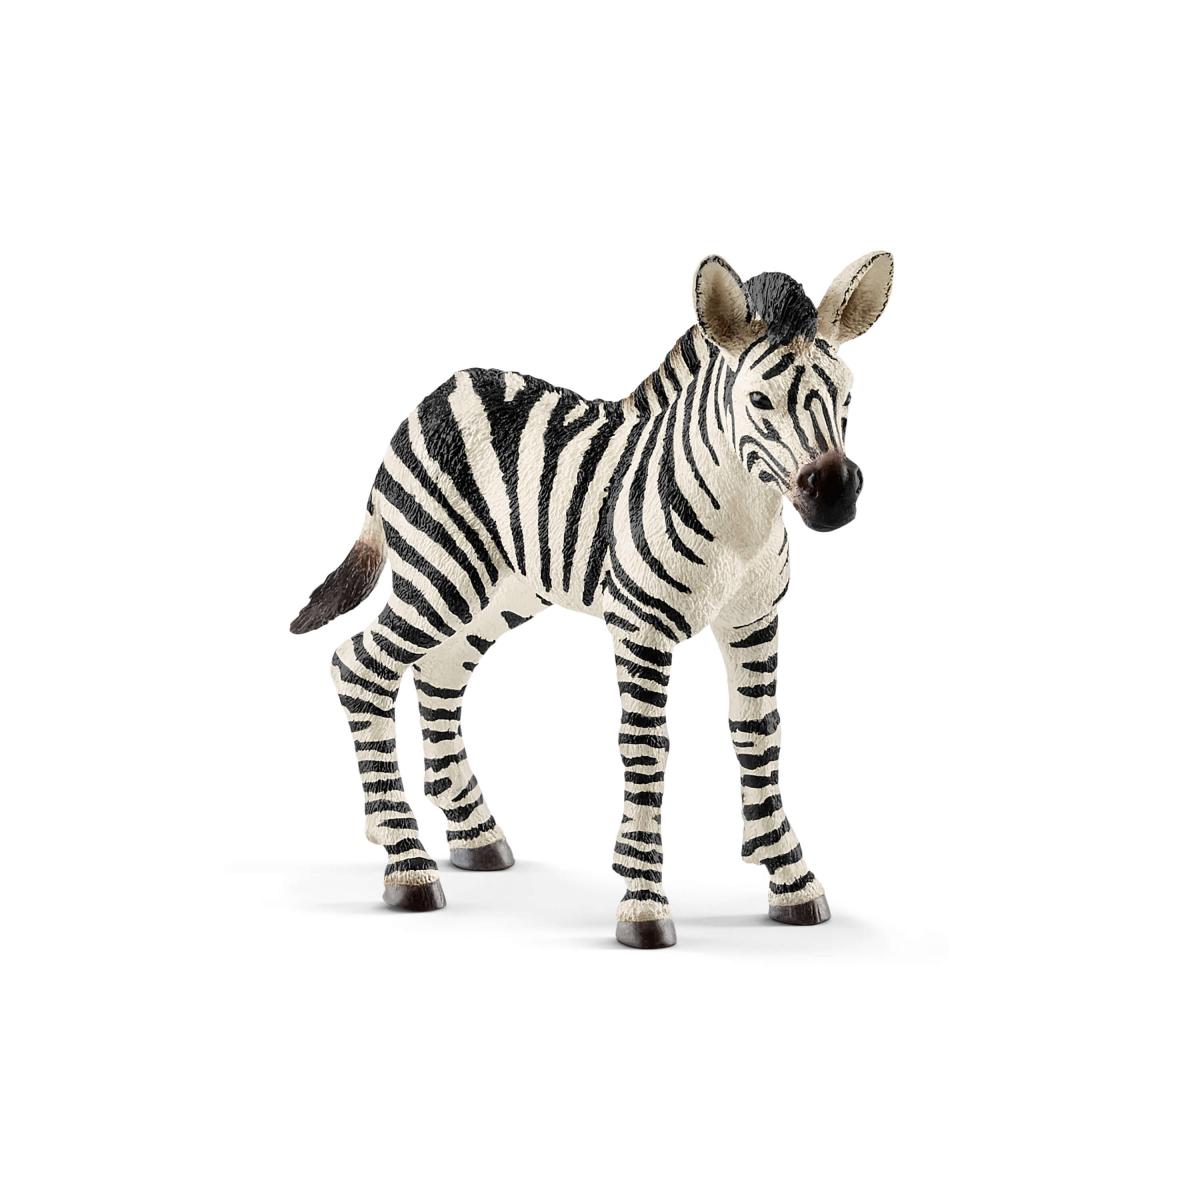 Zebra foal (Schleich #14811)